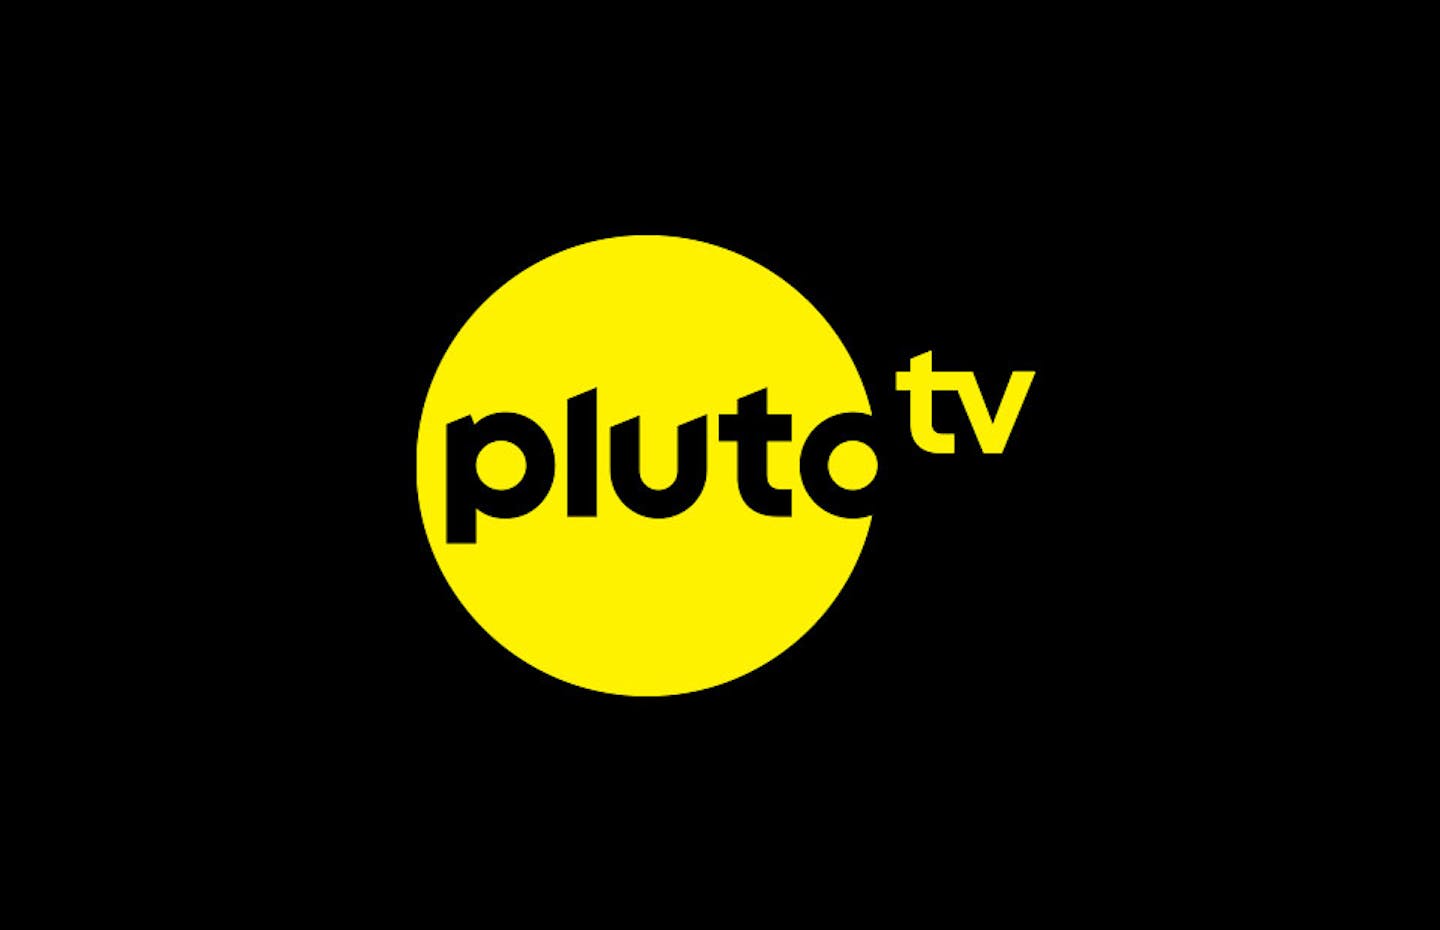 pluto-tv-logo.jpg